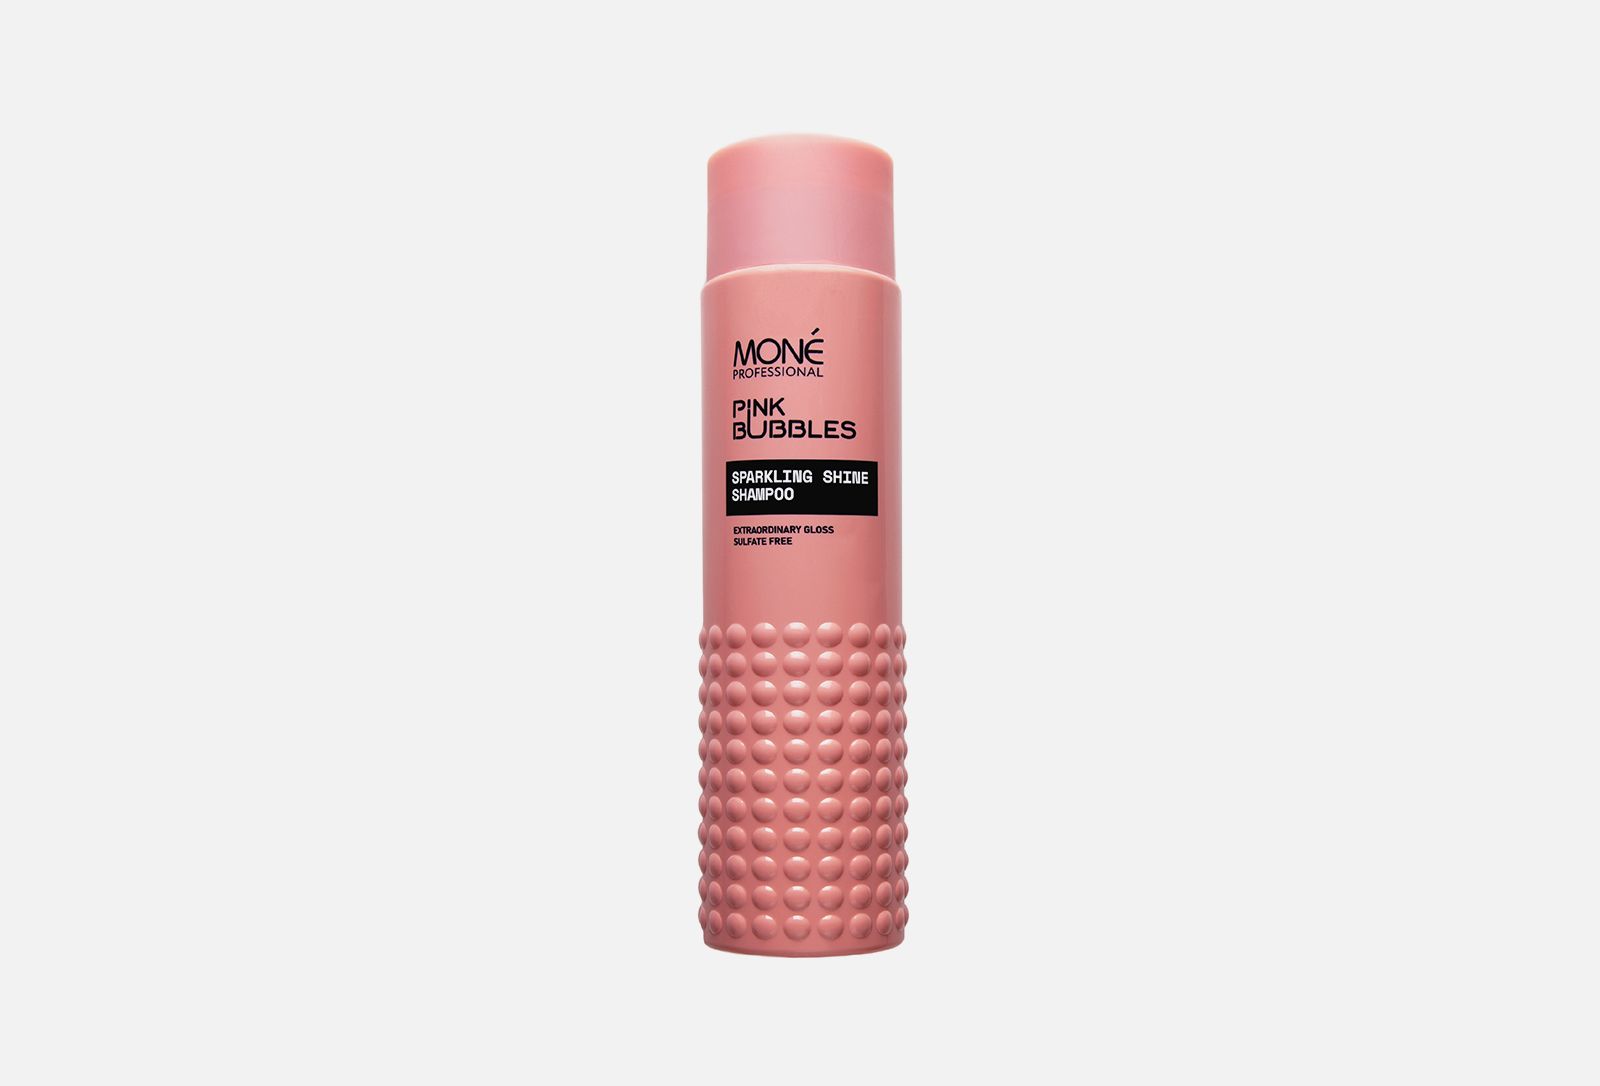 Mone шампунь. Шампунь Mone. Mone Pink Bubbles sparkling Shine Conditioner, 300мл. Шампунь Mone professional. Пудра для волос Mone.